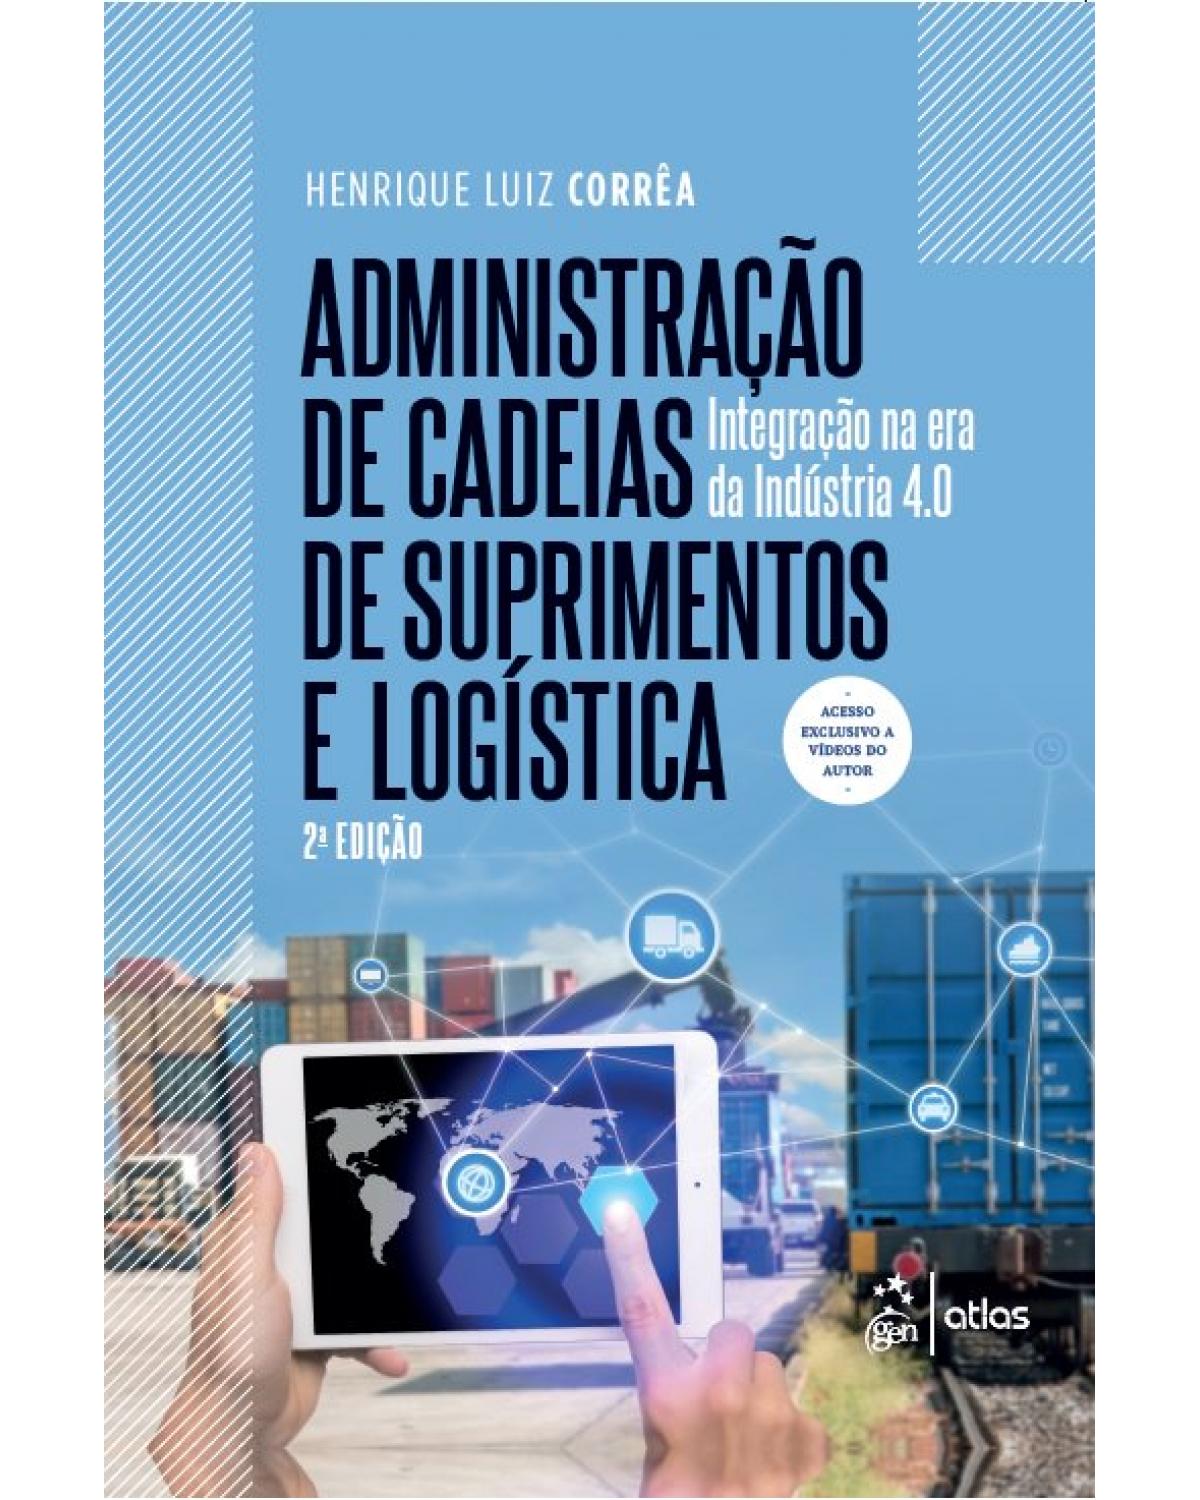 Administração de cadeias de suprimentos e logística - integração na era da indústria 4.0 - 2ª Edição | 2019